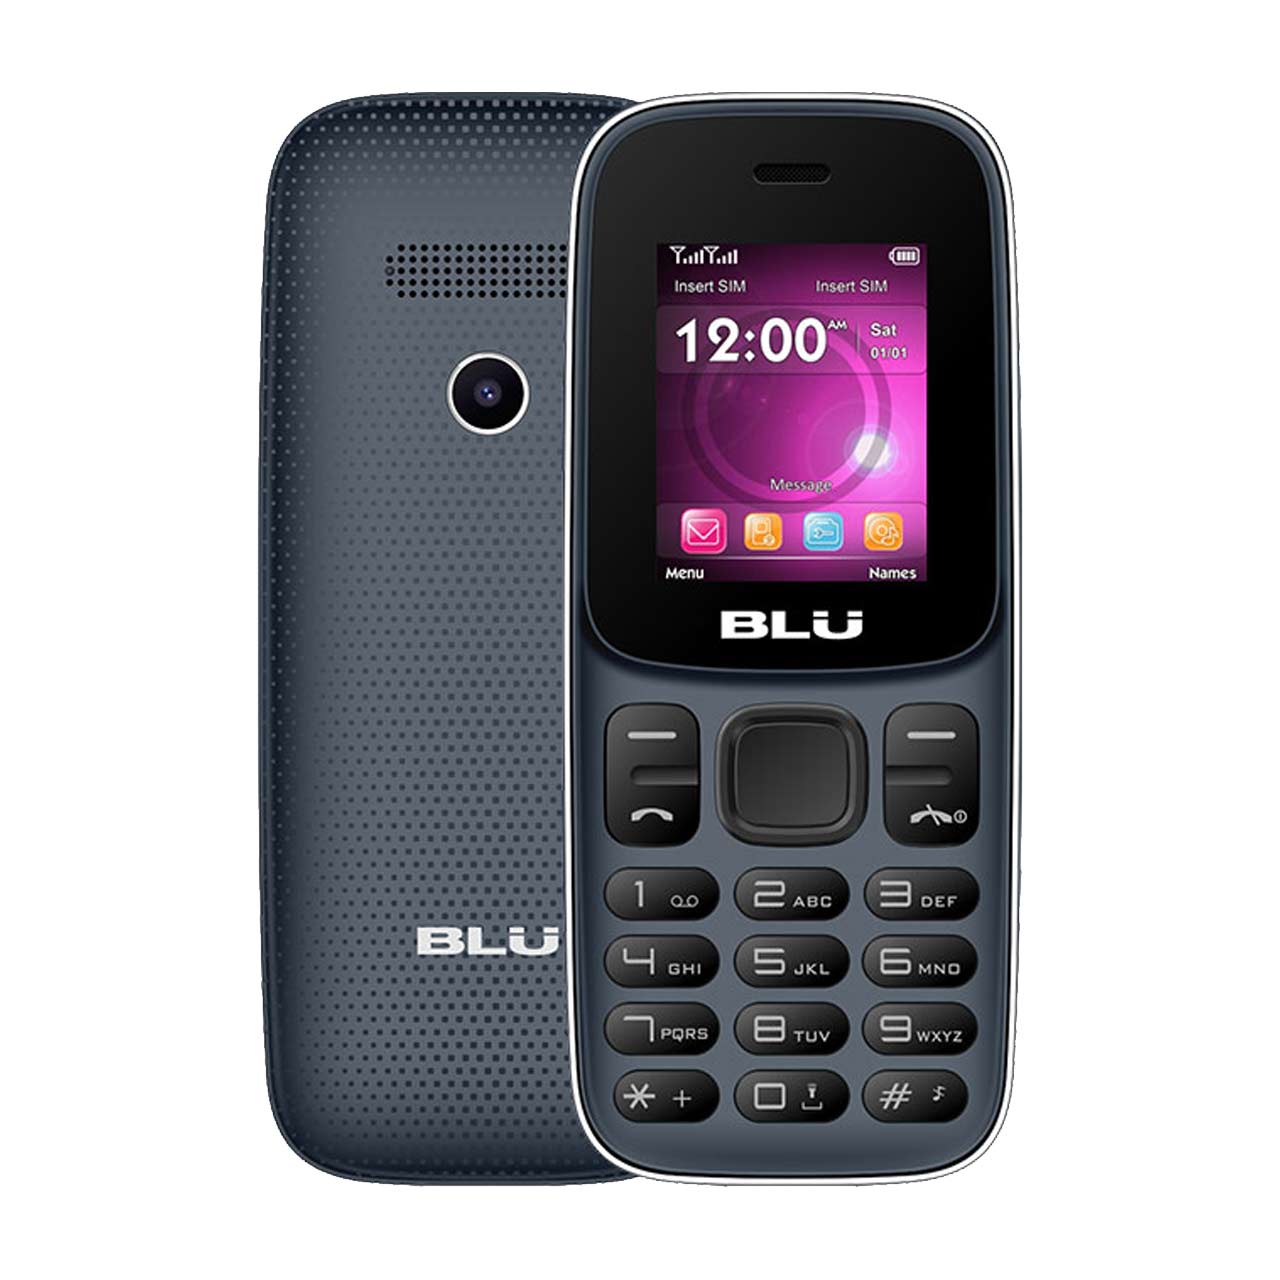  گوشی موبایل BLU مدل Z5 دو سیم کارت-آبی تیره     